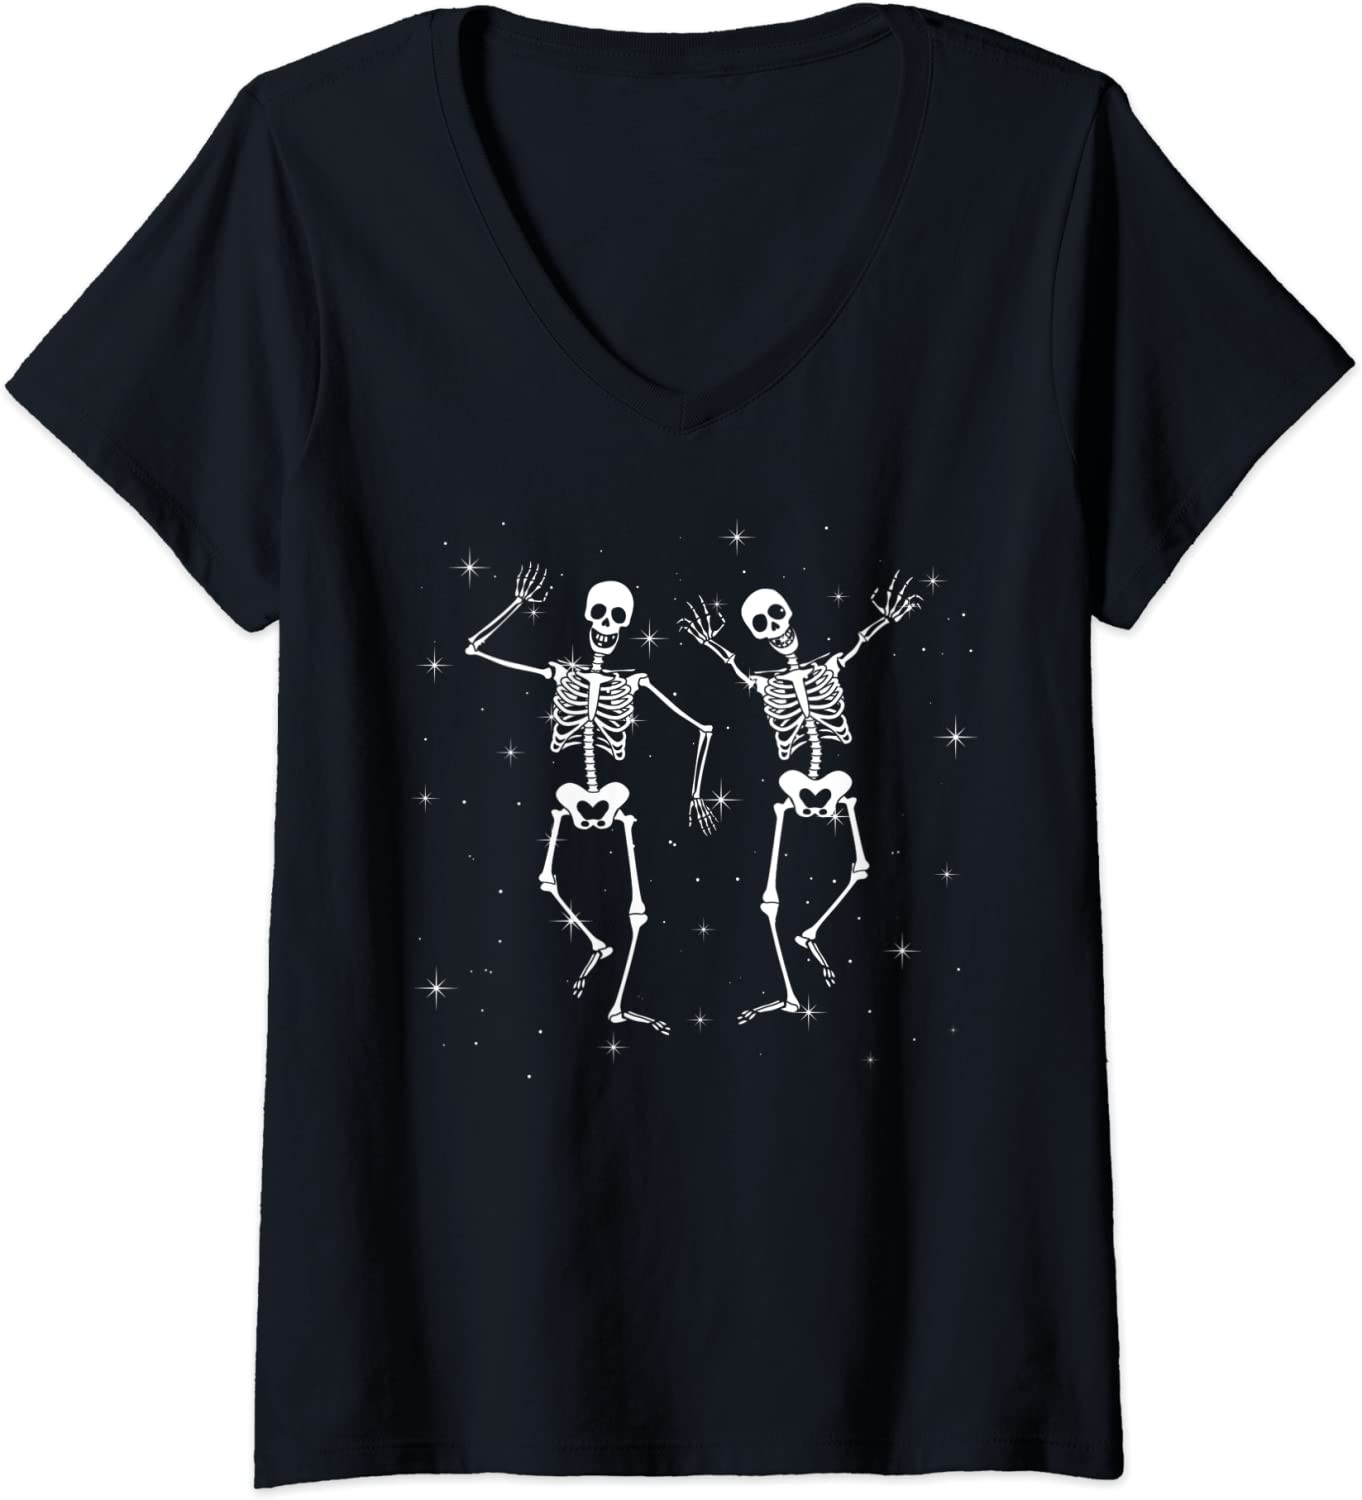 Halloween Costume Dance Of Death Macabre Skeleton Dancing T-Shirt